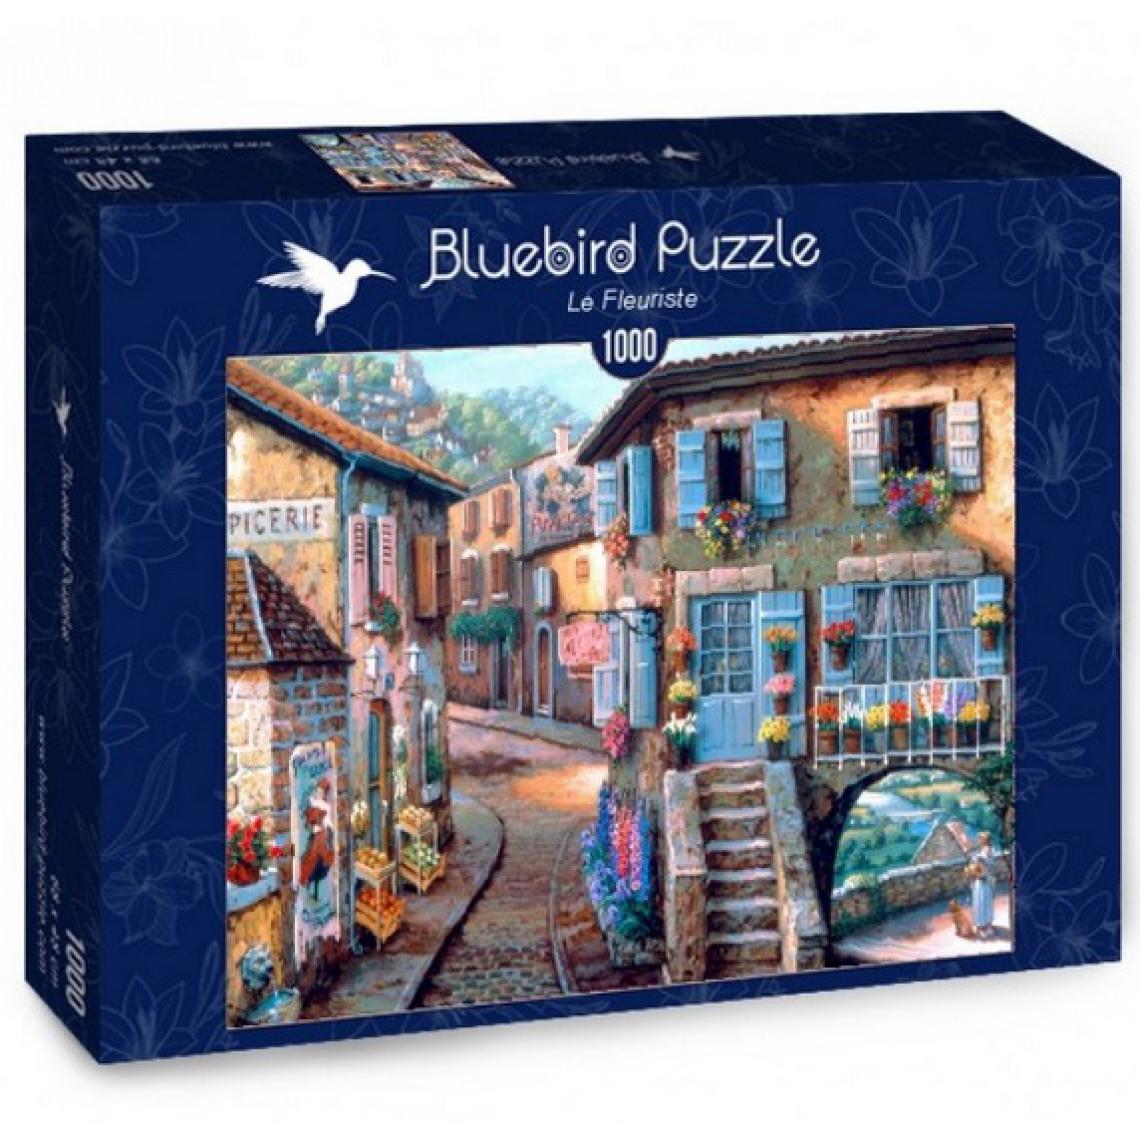 Bluebird - Puzzle Le fleuriste 1000 pieces - Animaux